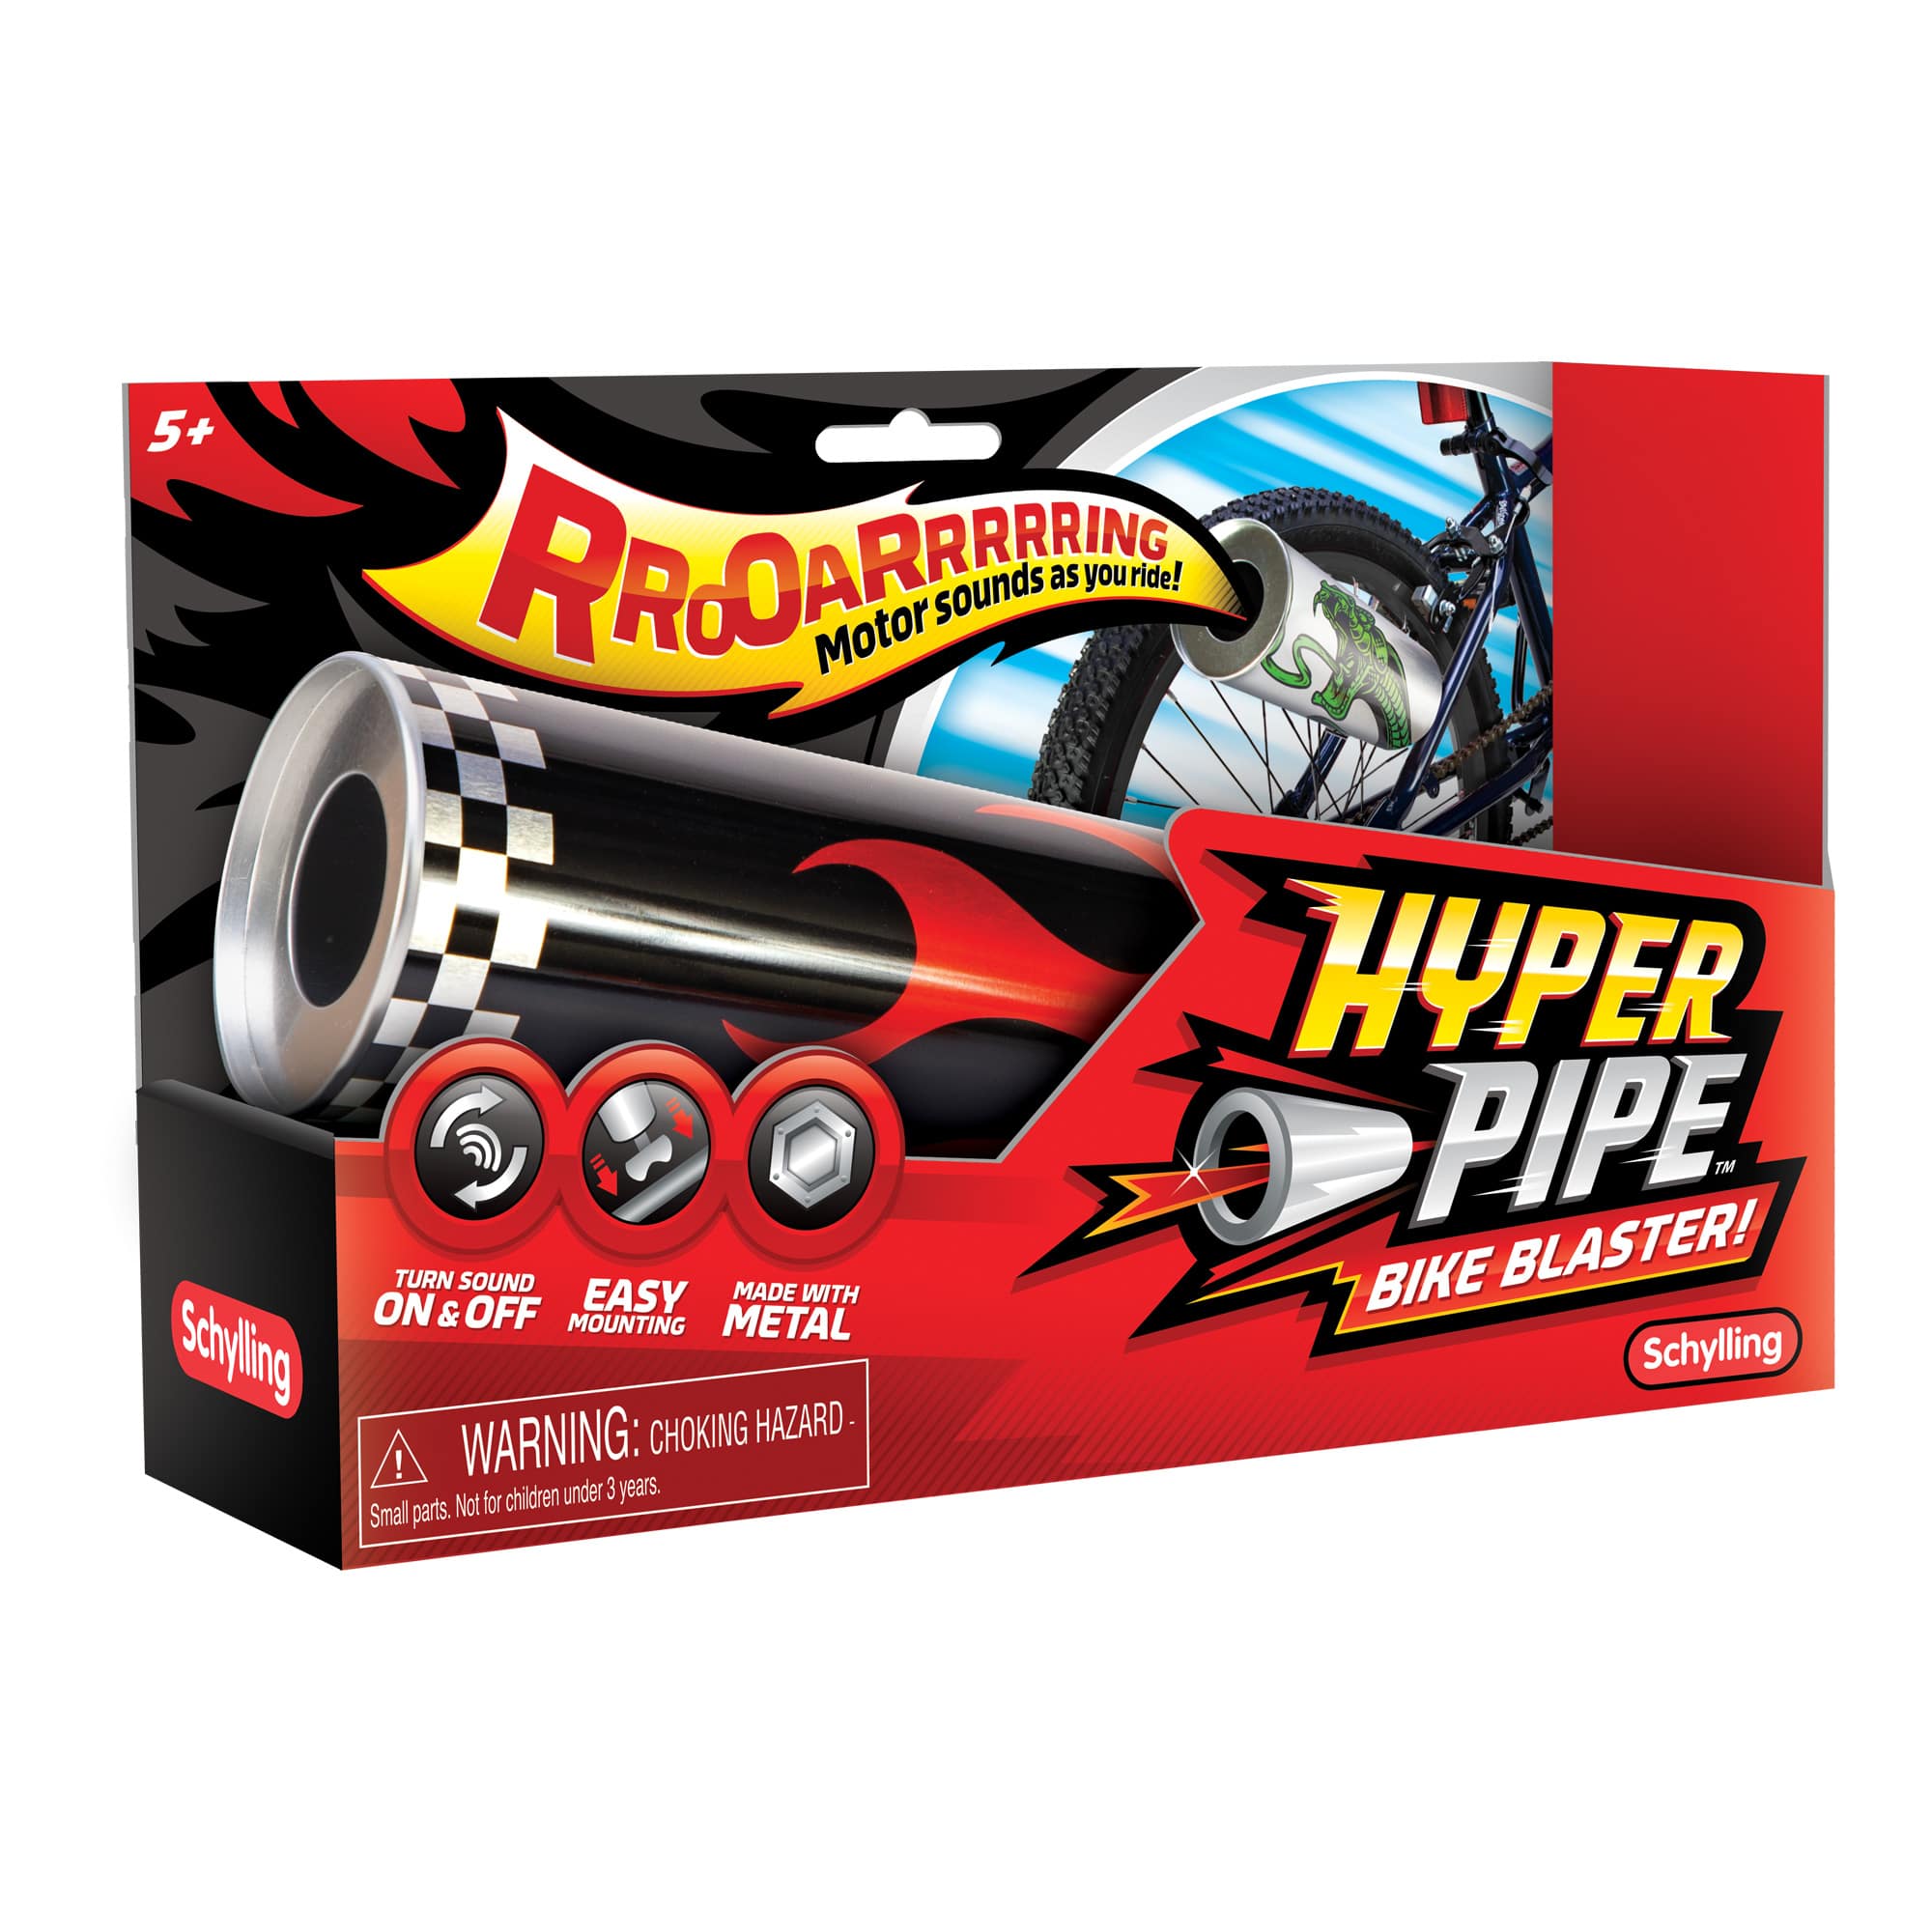 Hyper Pipe Bike Blaster    